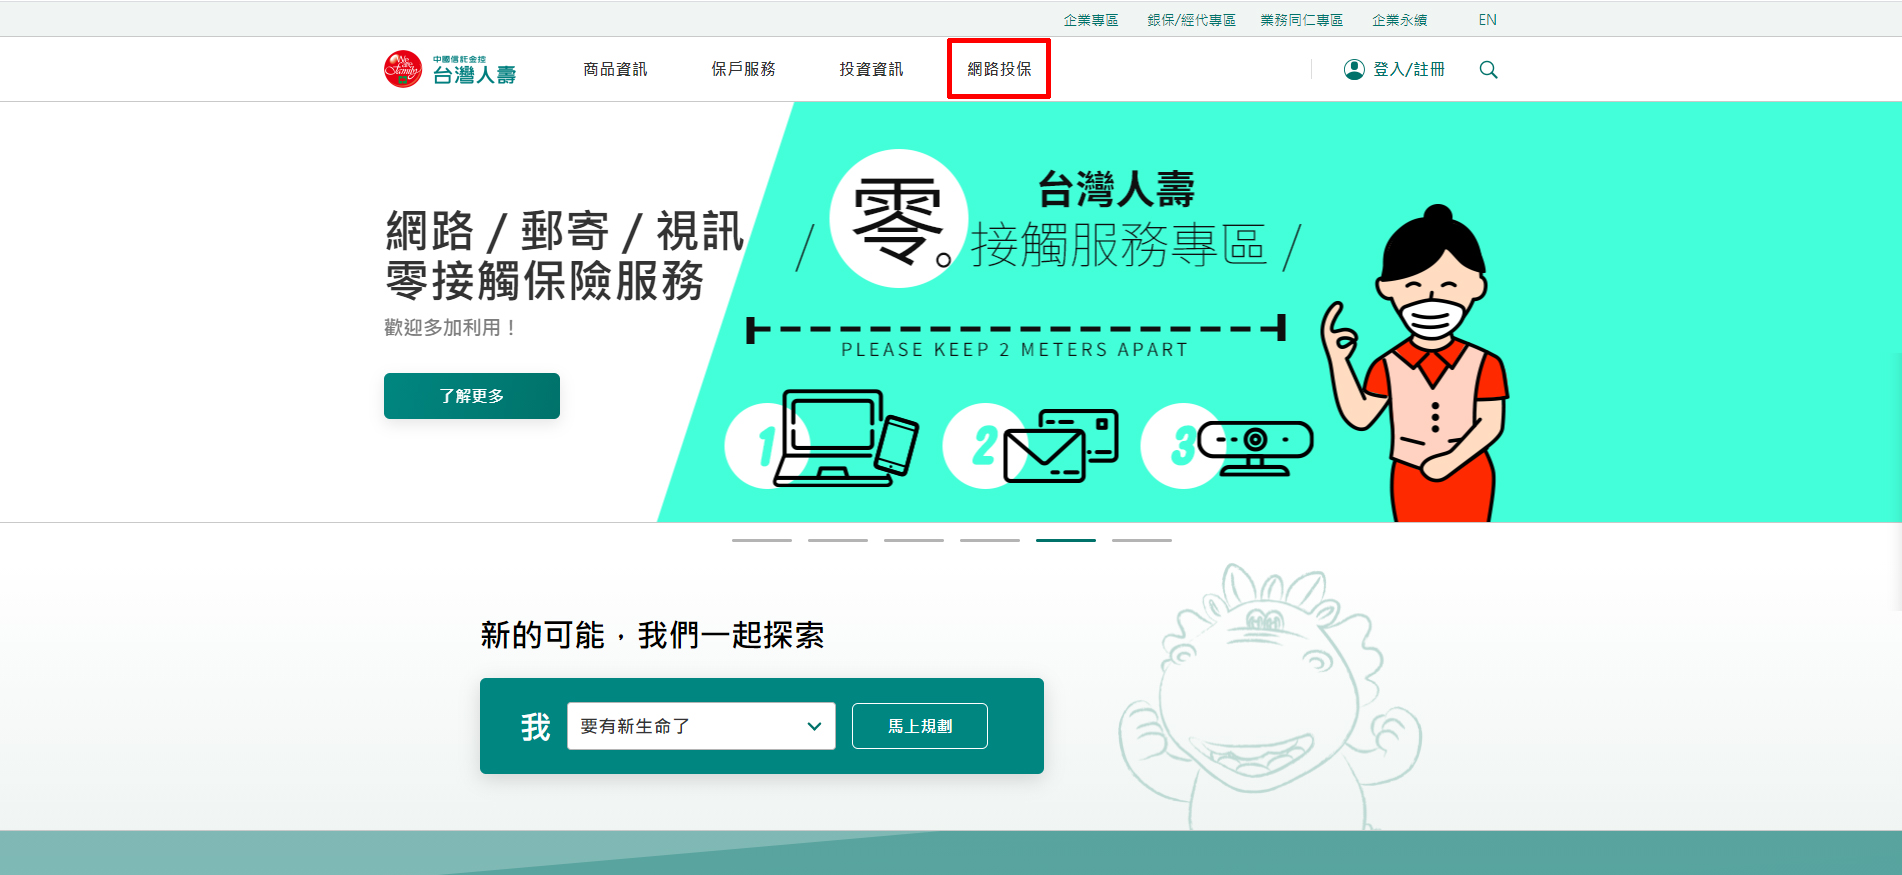 1.進入網路投保網站首頁前往台壽官網www.taiwanlife.com點選「網路投保」區塊。